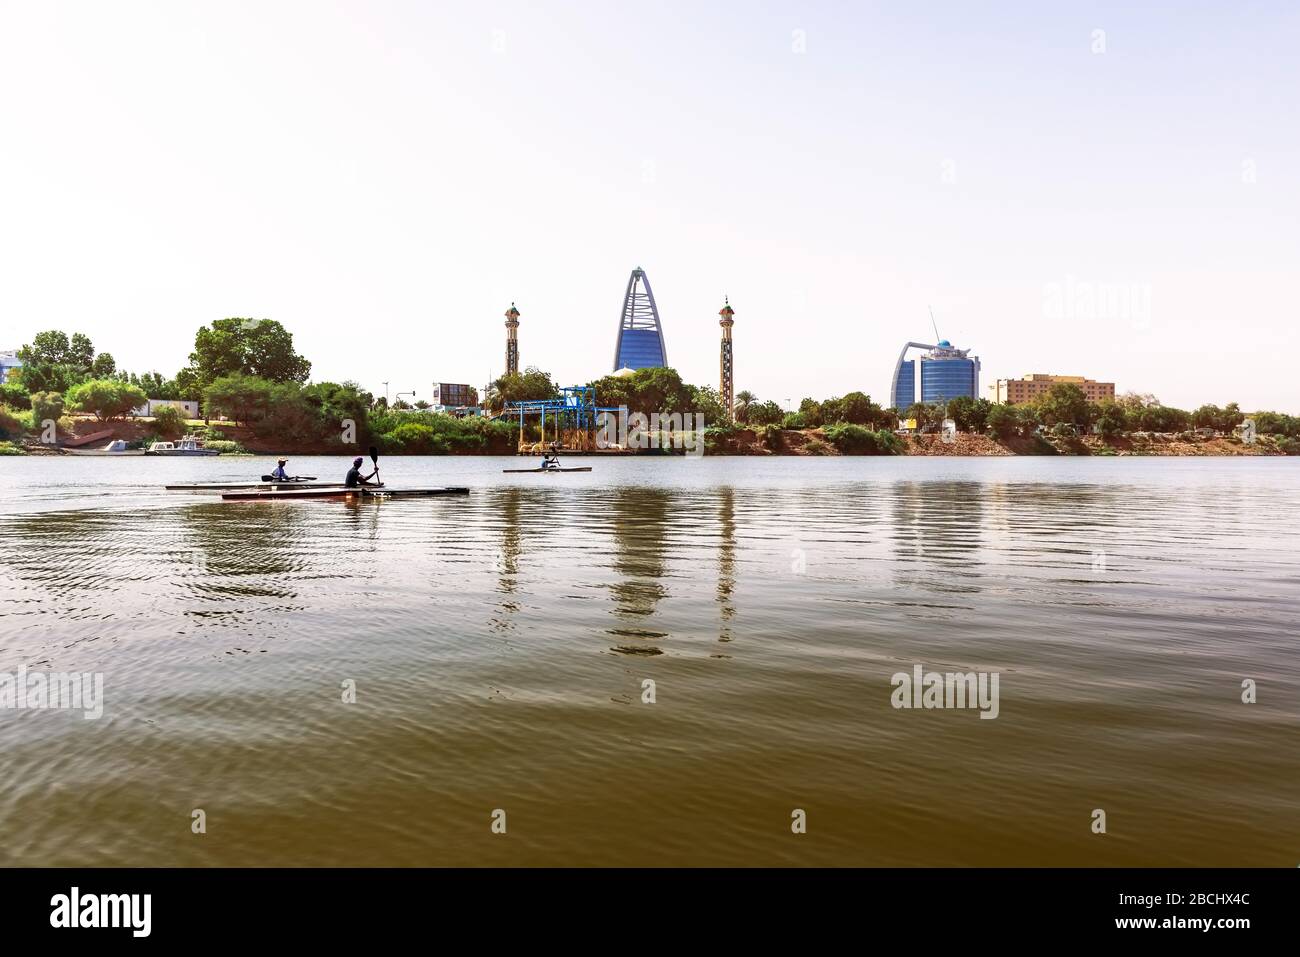 Khartoum, Soudan - 29 janvier 2015 : les habitants de la région font du kayak sur le Nil à Khartoum, au Soudan. Banque D'Images